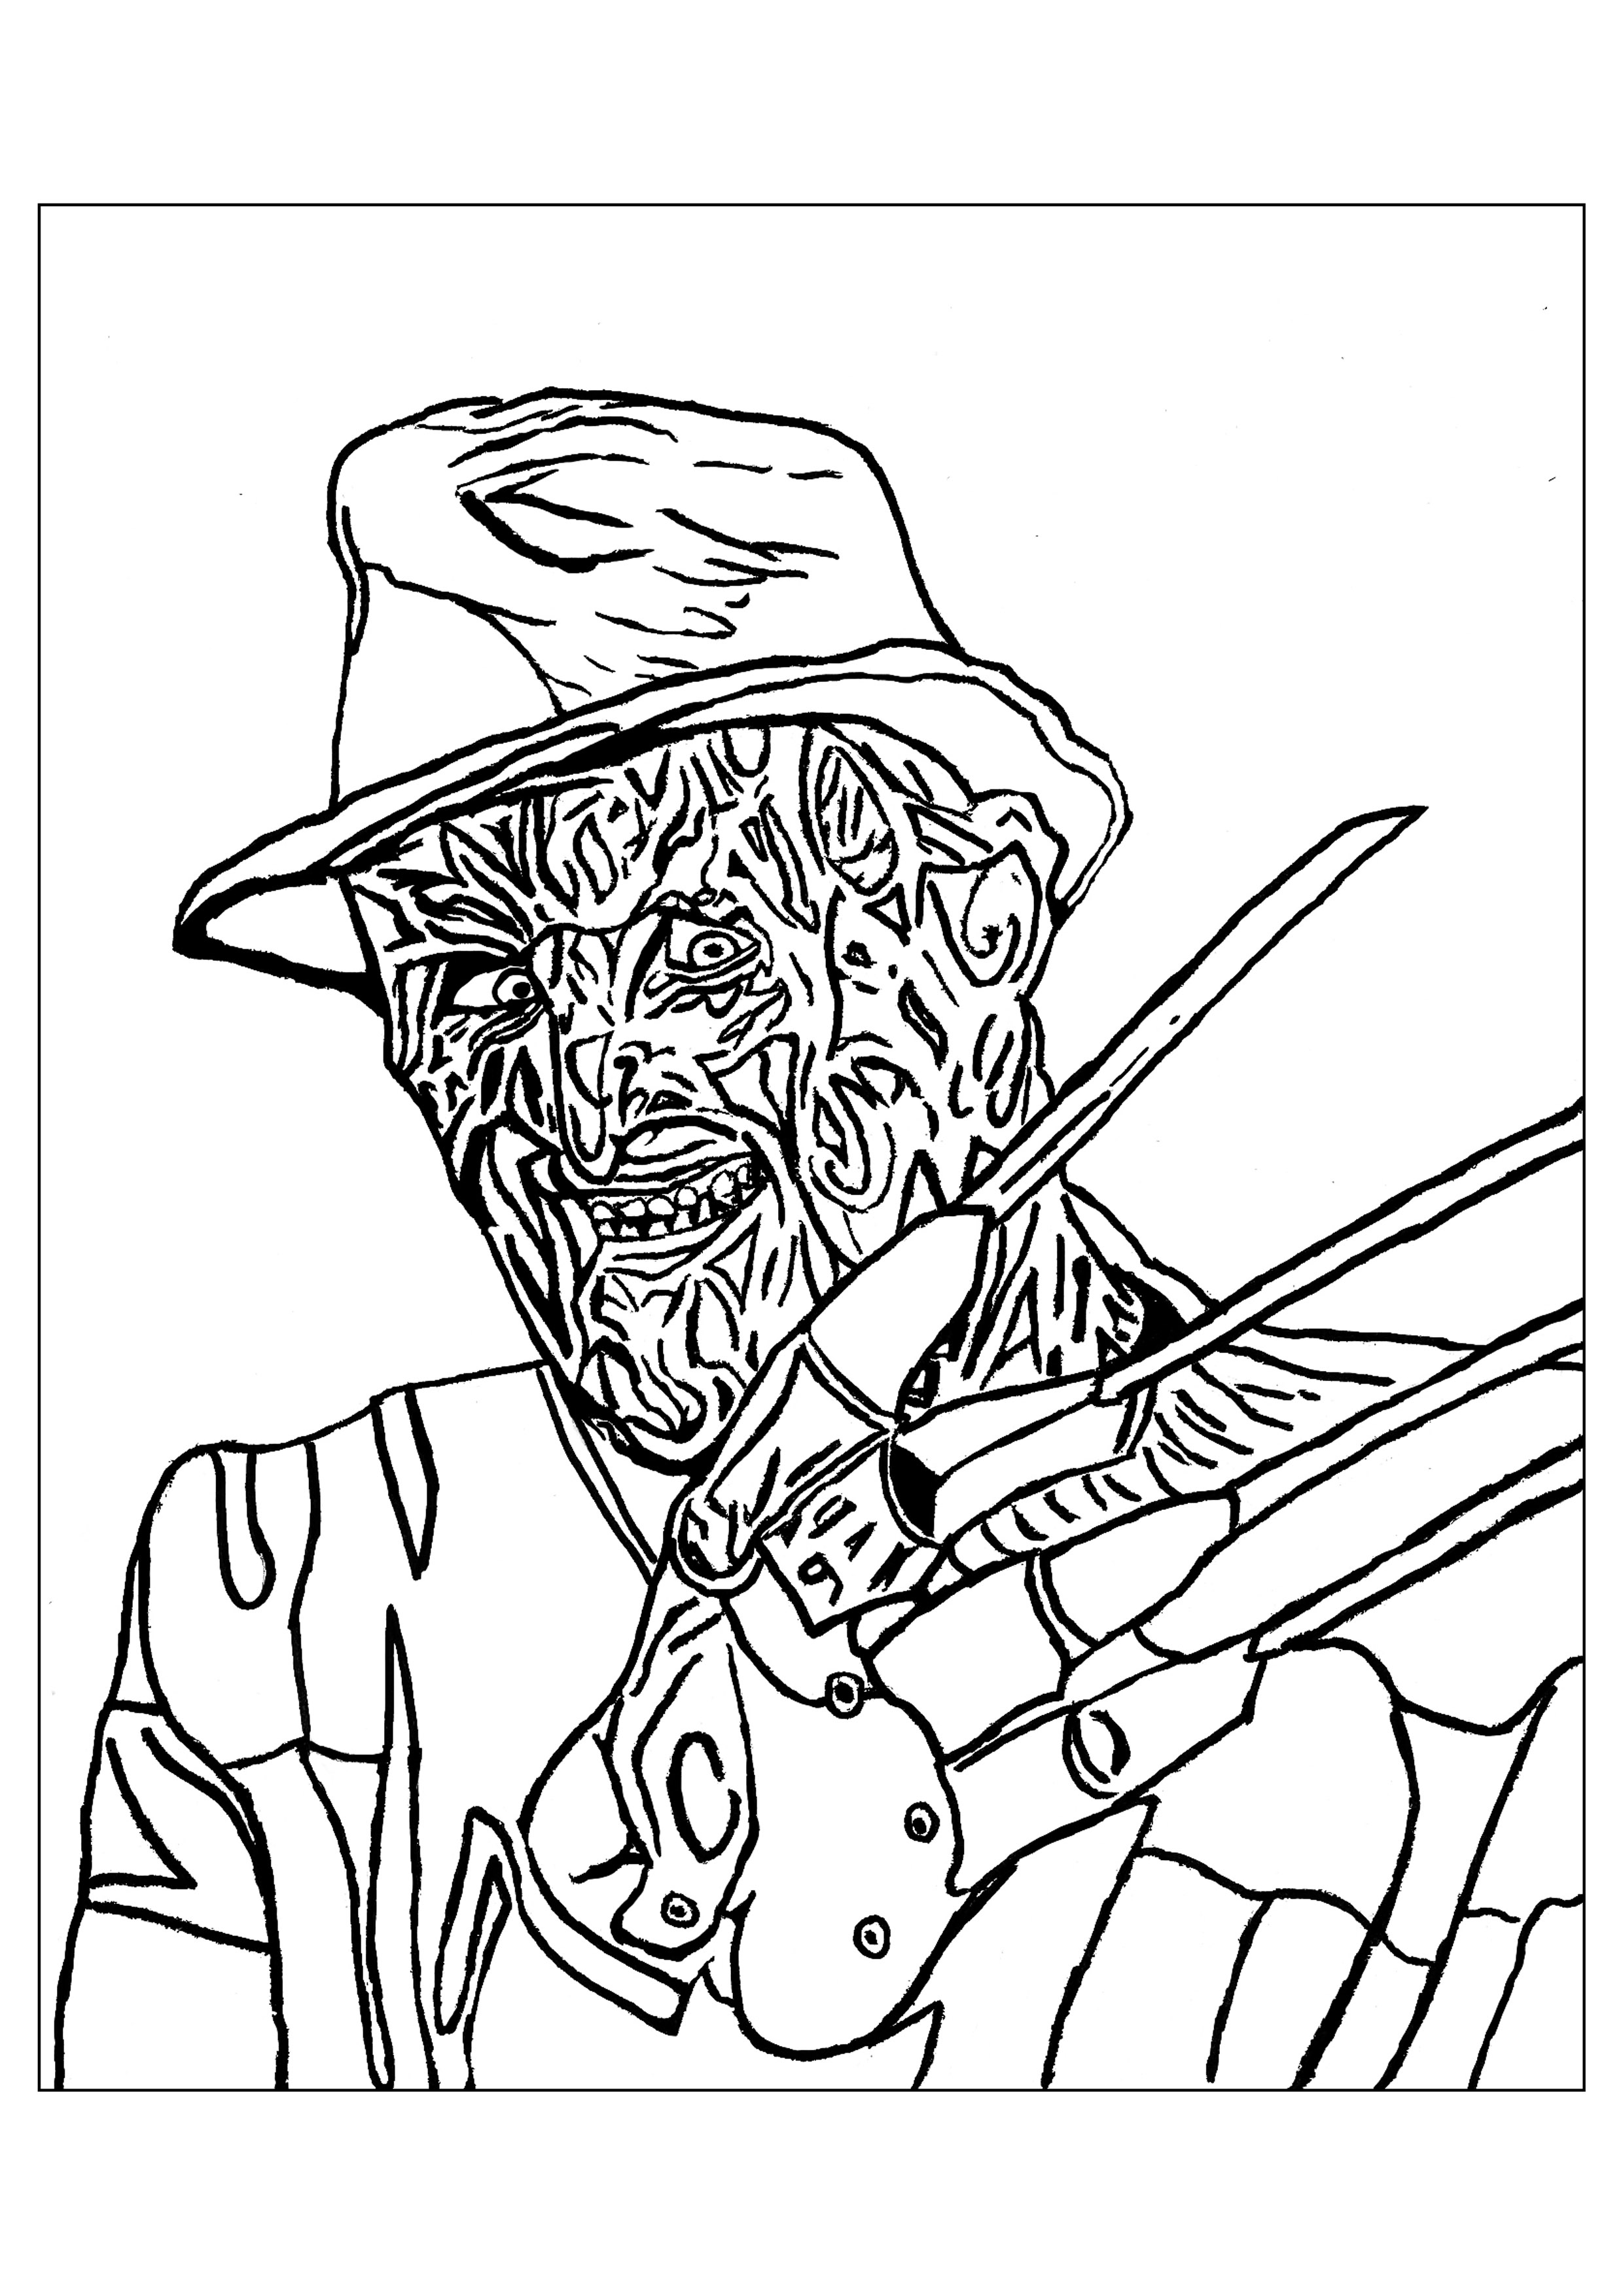 Uma assustadora página para colorir de Freddy Krueger, perfeita para o Halloween